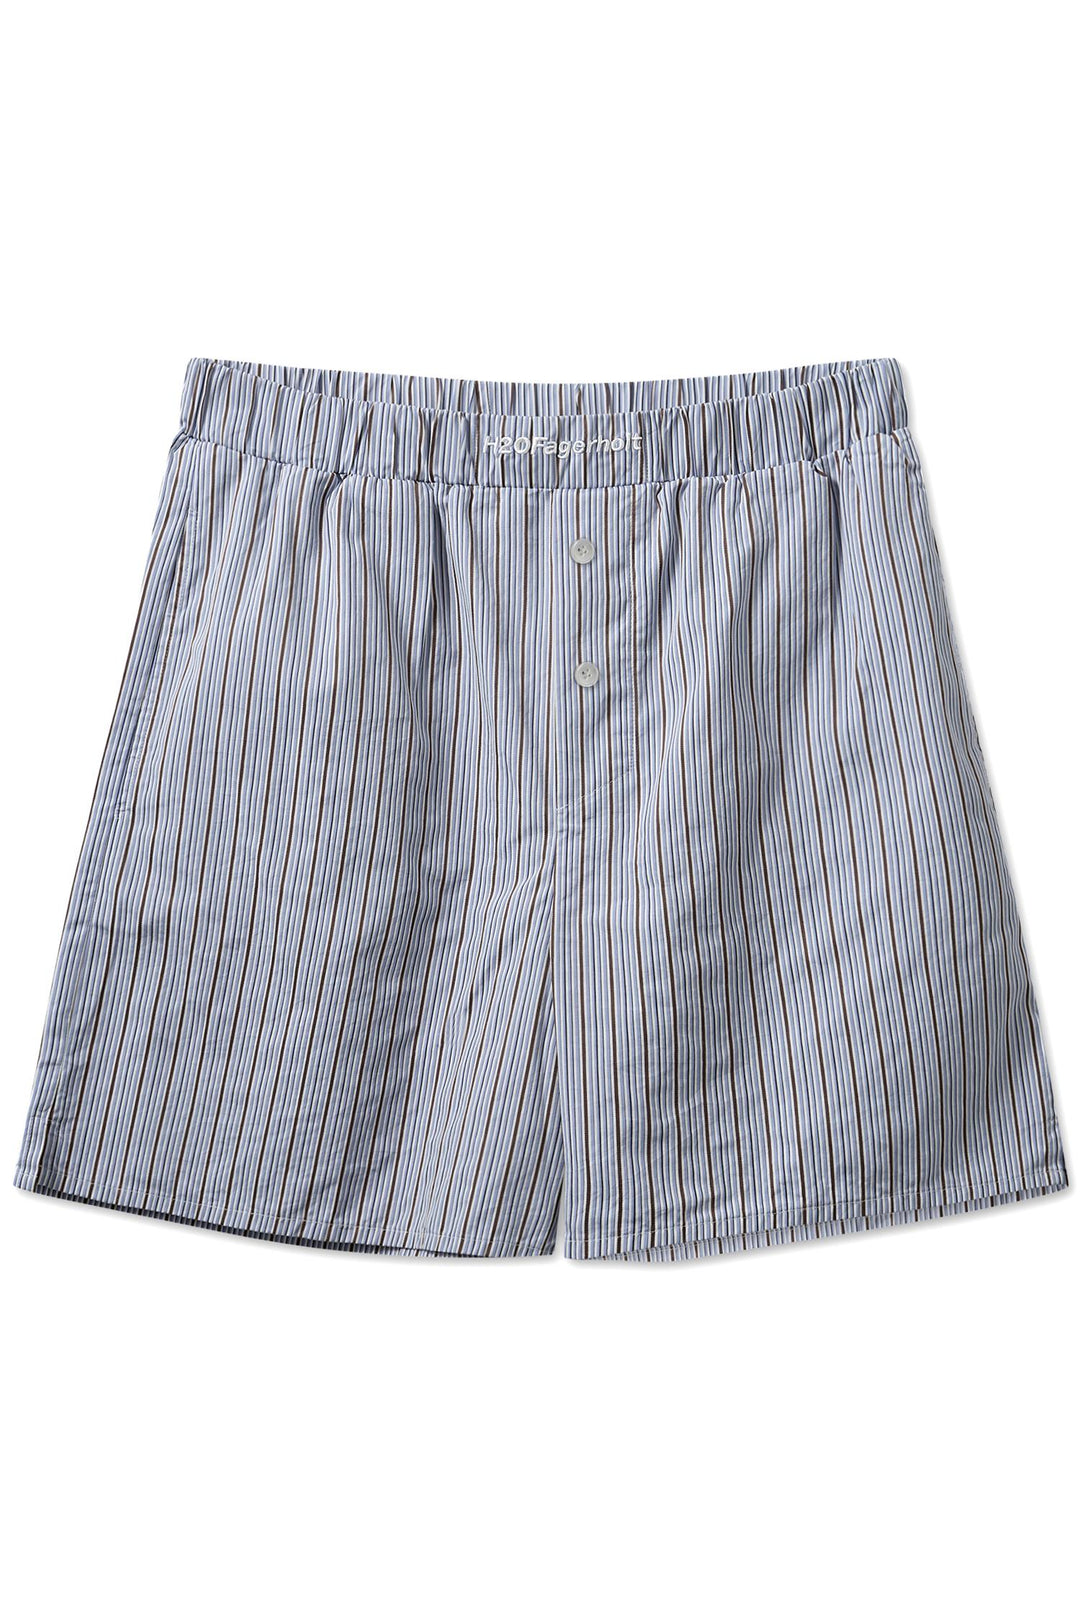 PJ Shorts Blue Stripe